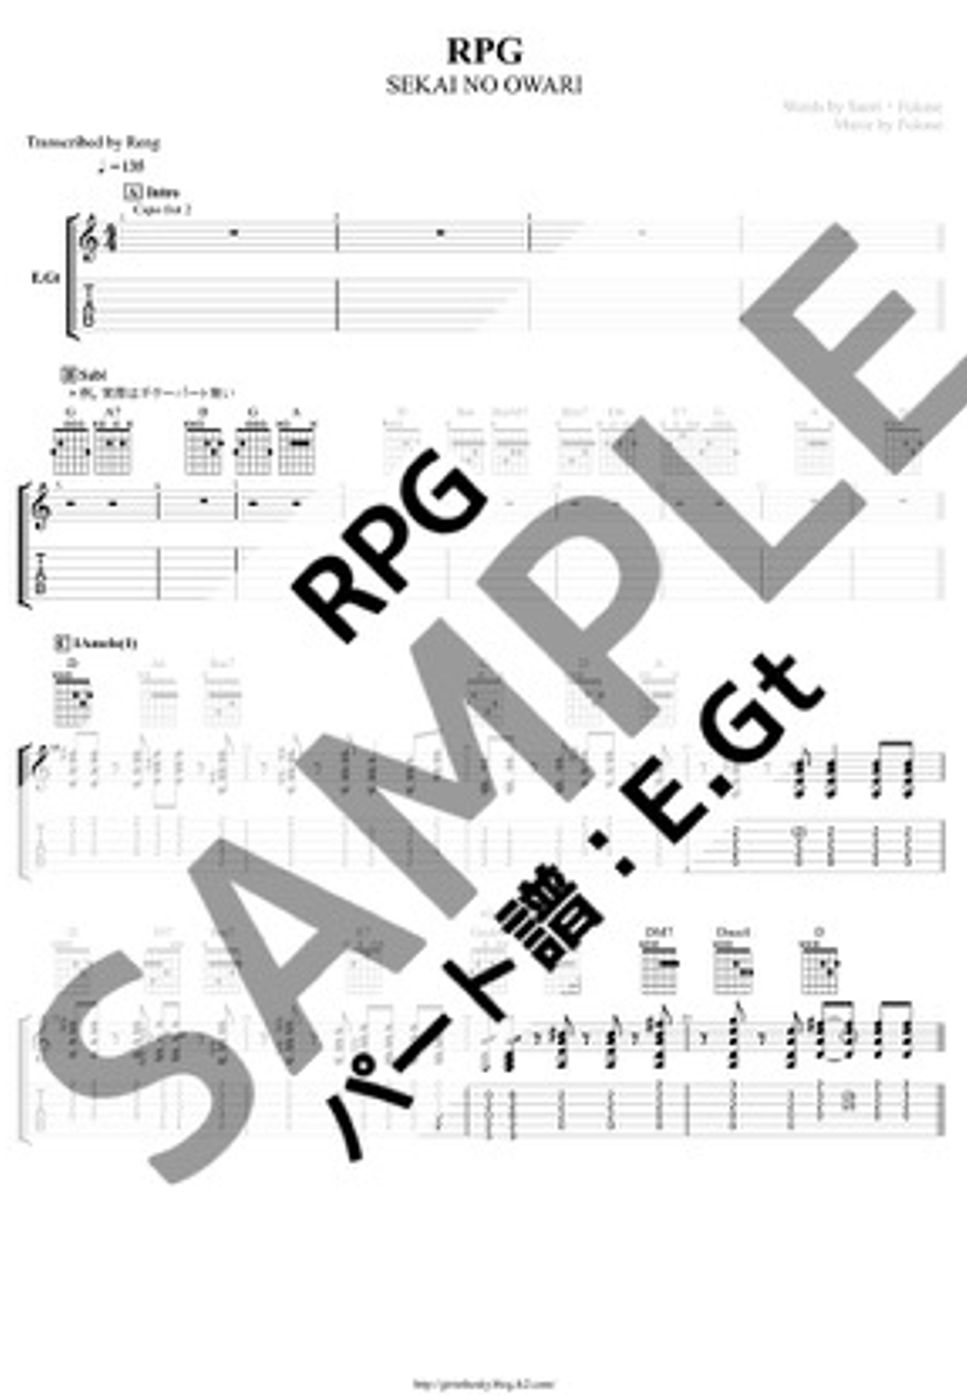 SEKAI NO OWARI - RPG (E.Gt/capo2/TAB譜) by Score by Reng